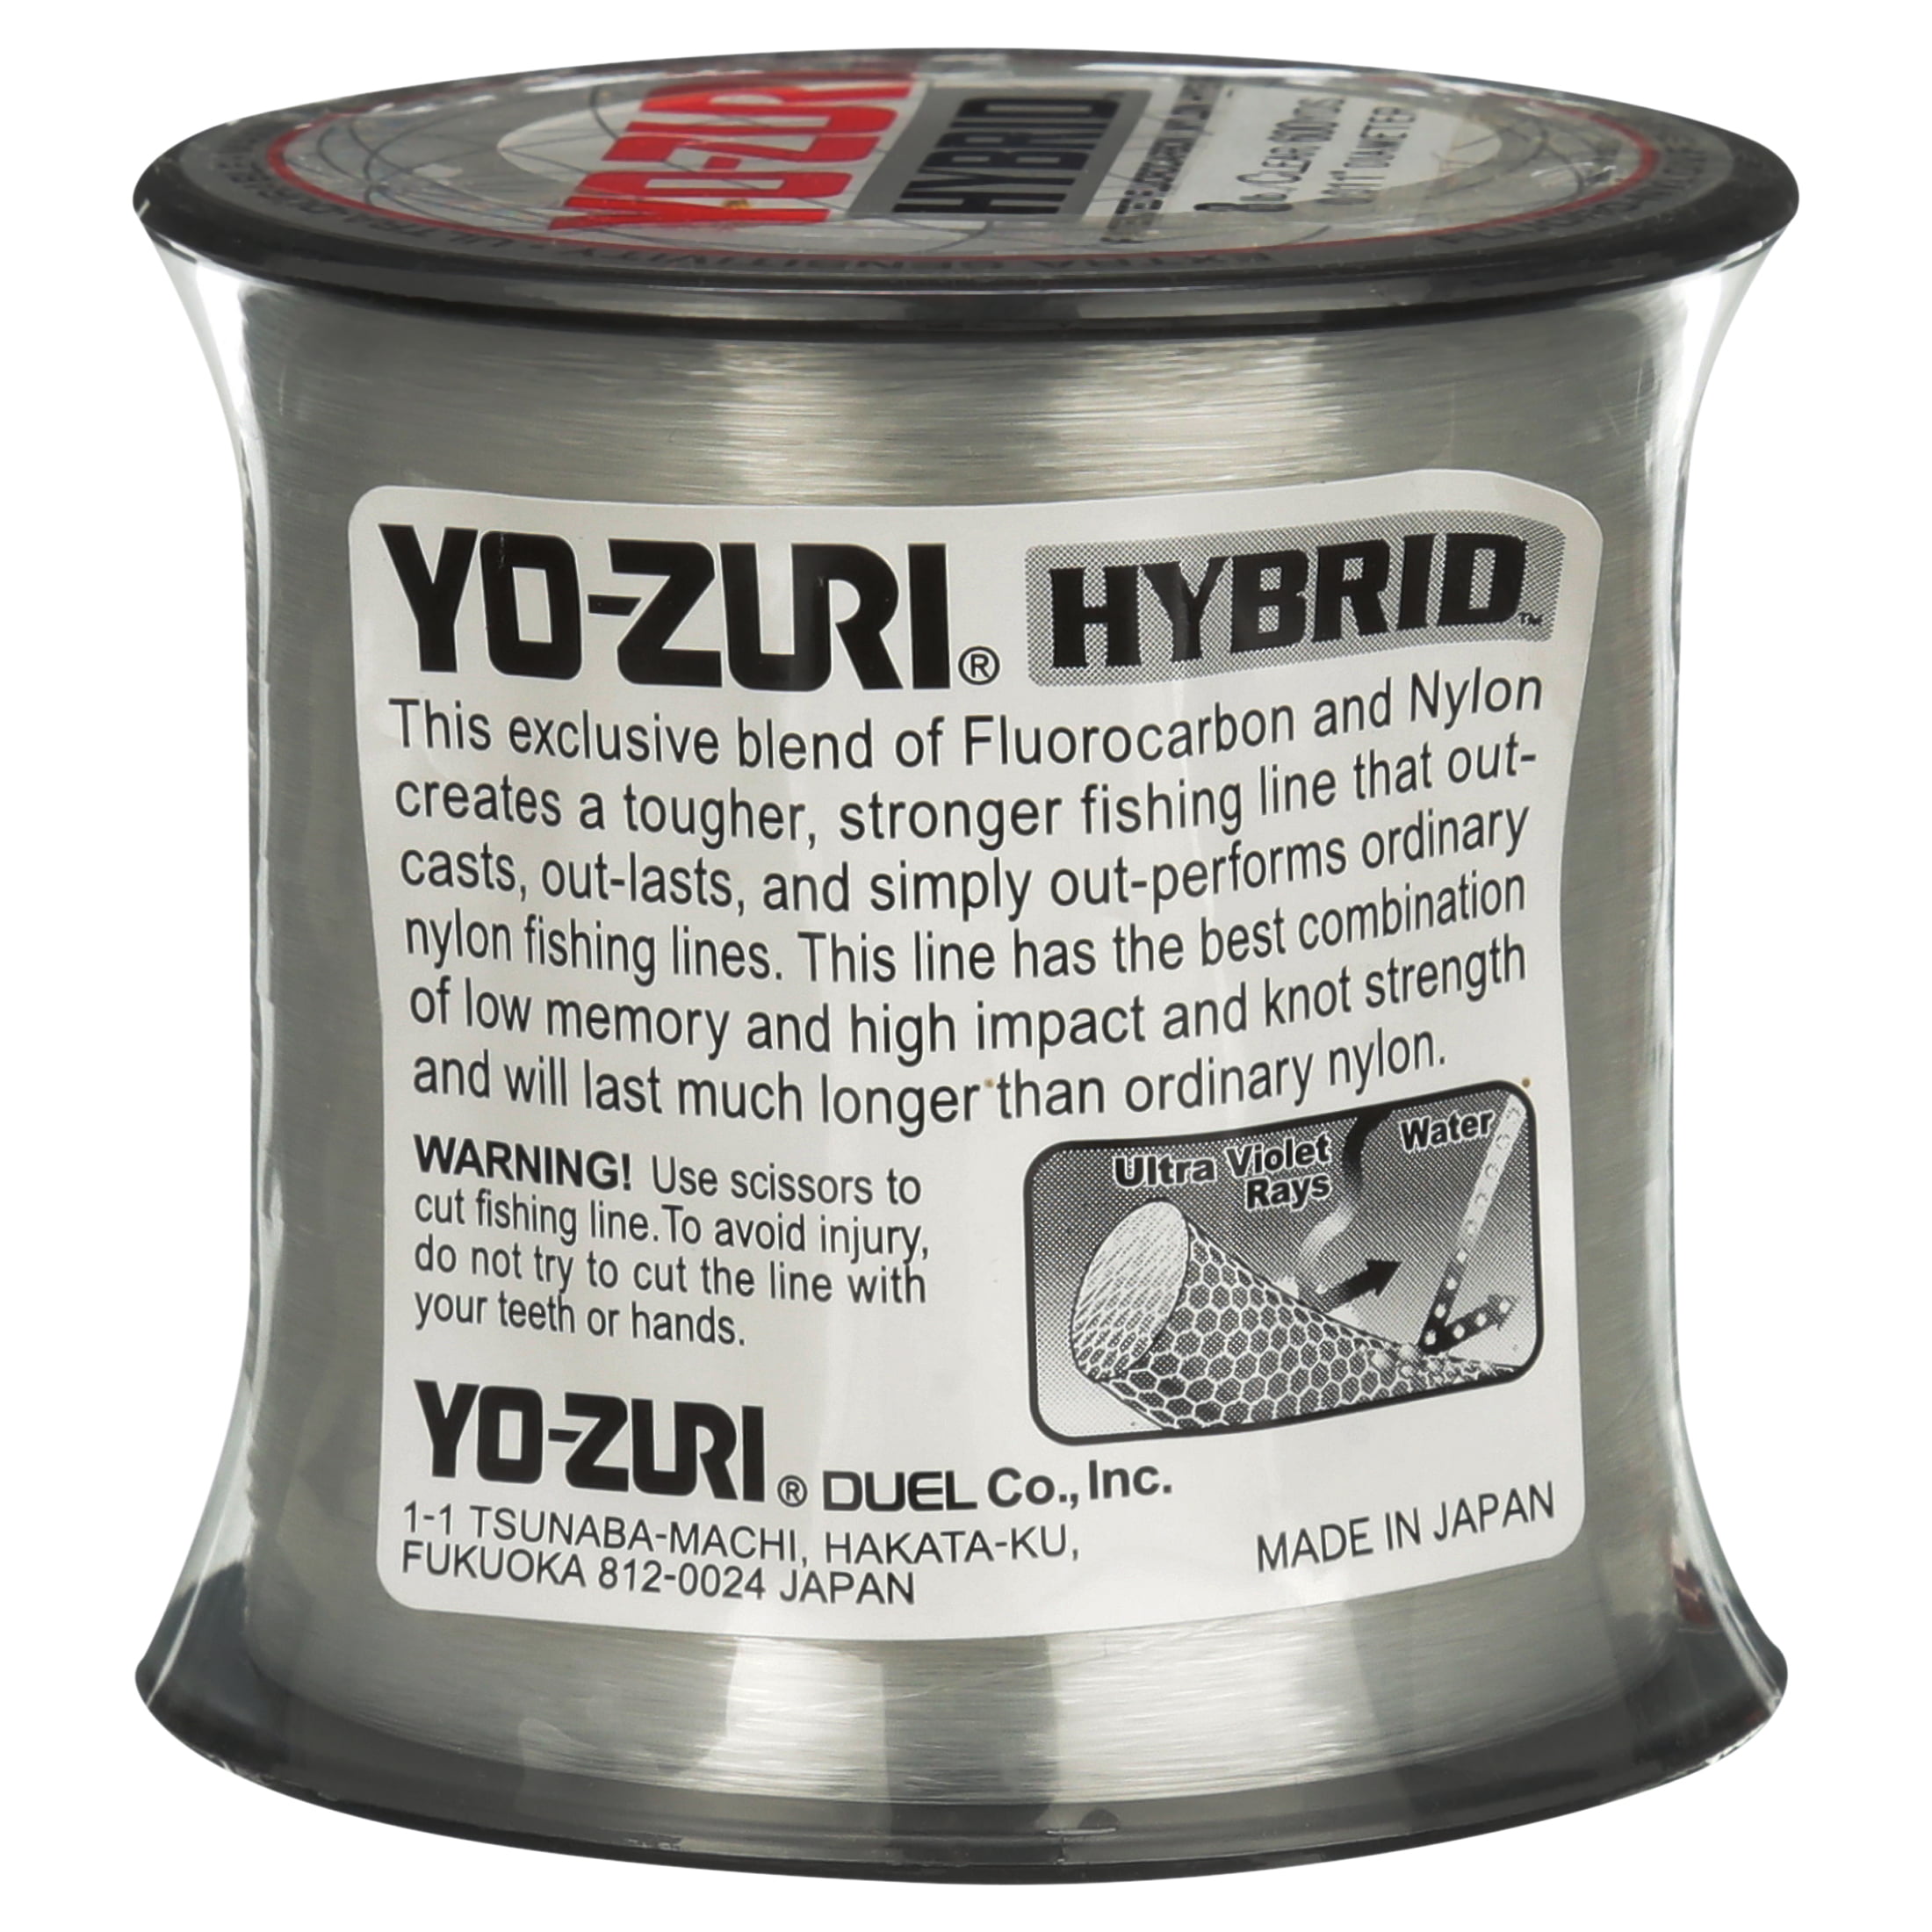 10LB-600YD ULTRA SOFT YO-ZURI HYBRID Fluorocarbon Fishing